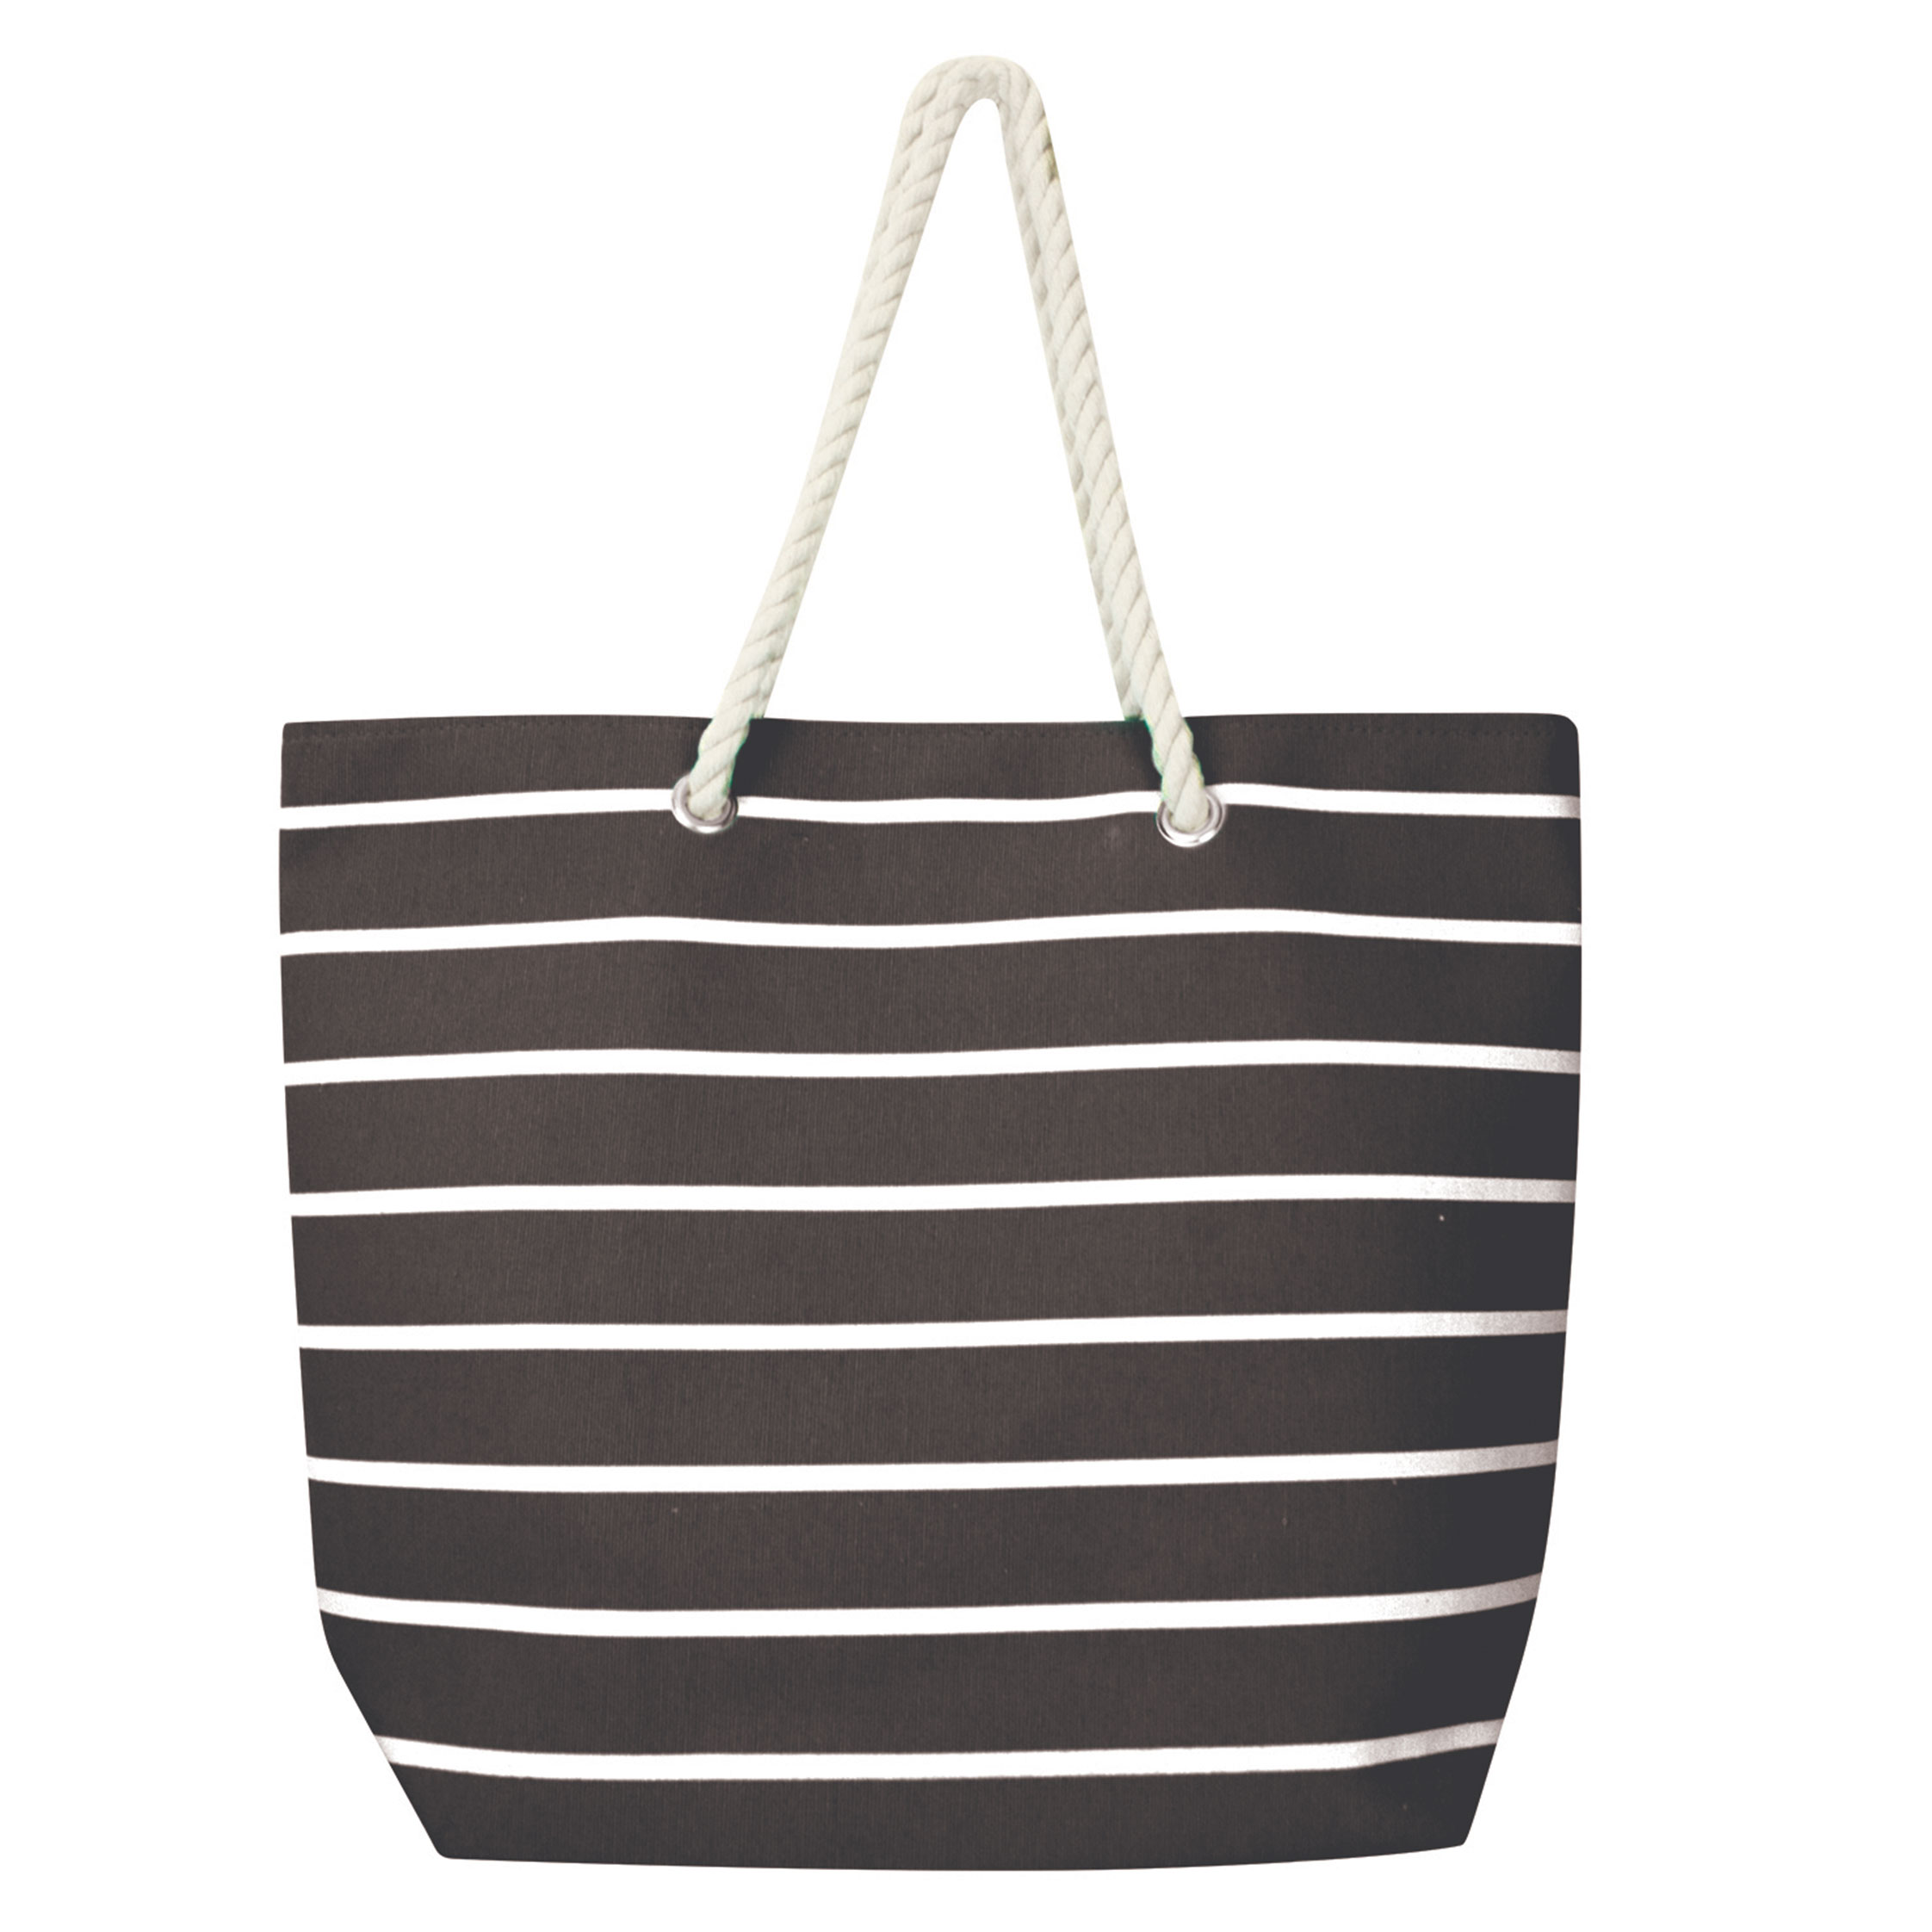 Stripe beach bag black - Wicked Sista | Cosmetic Bags, Jewellery, Hair ...